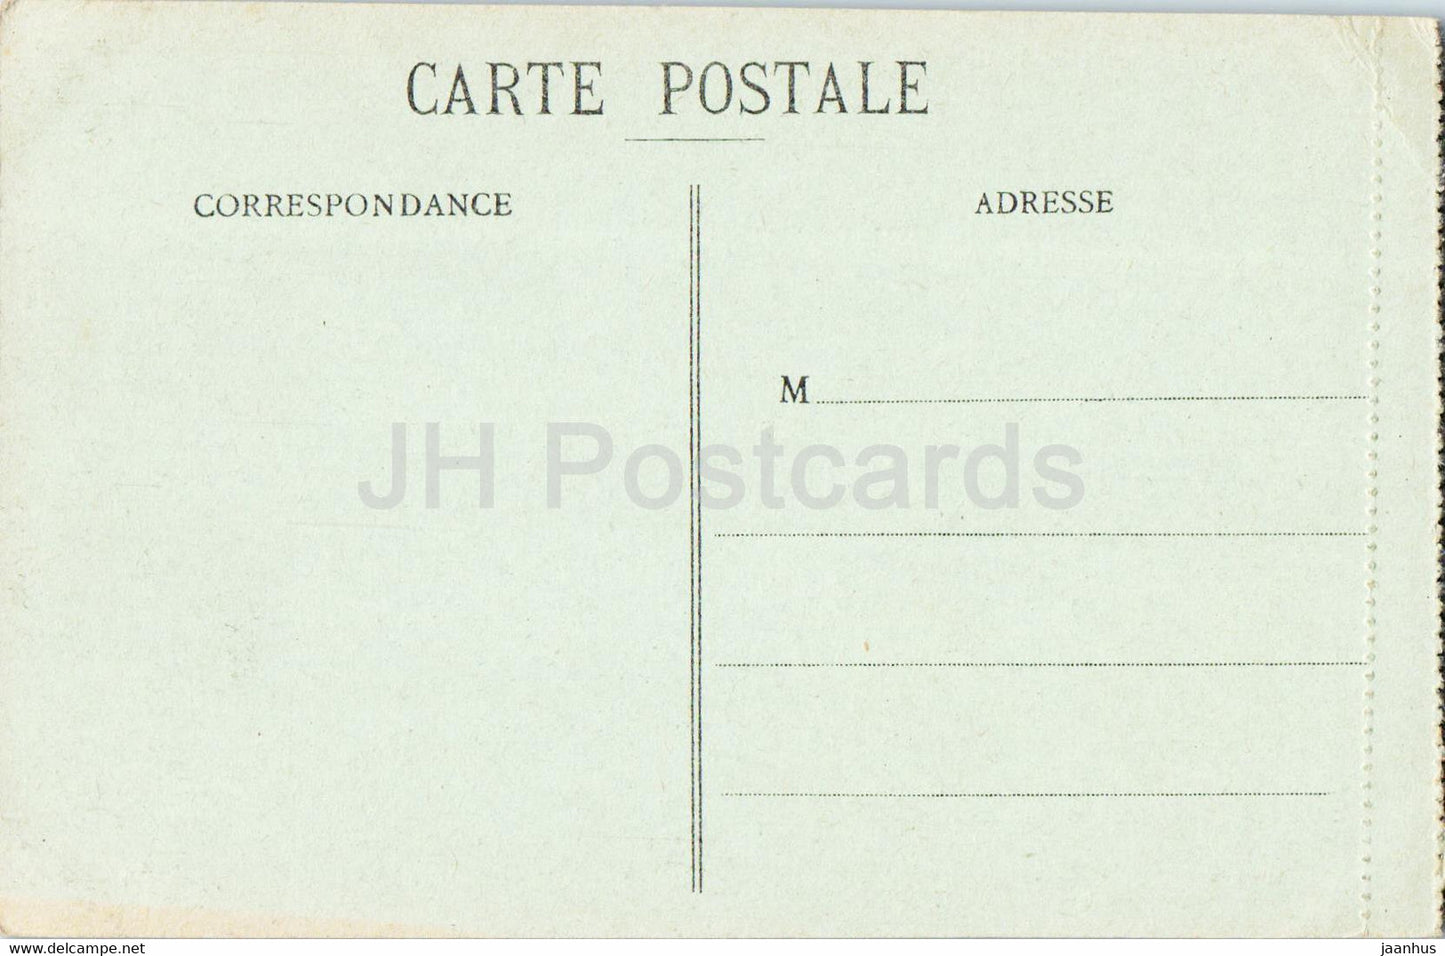 Oran - L'Hôtel de Ville - 1 - carte postale ancienne - Algérie - inutilisée